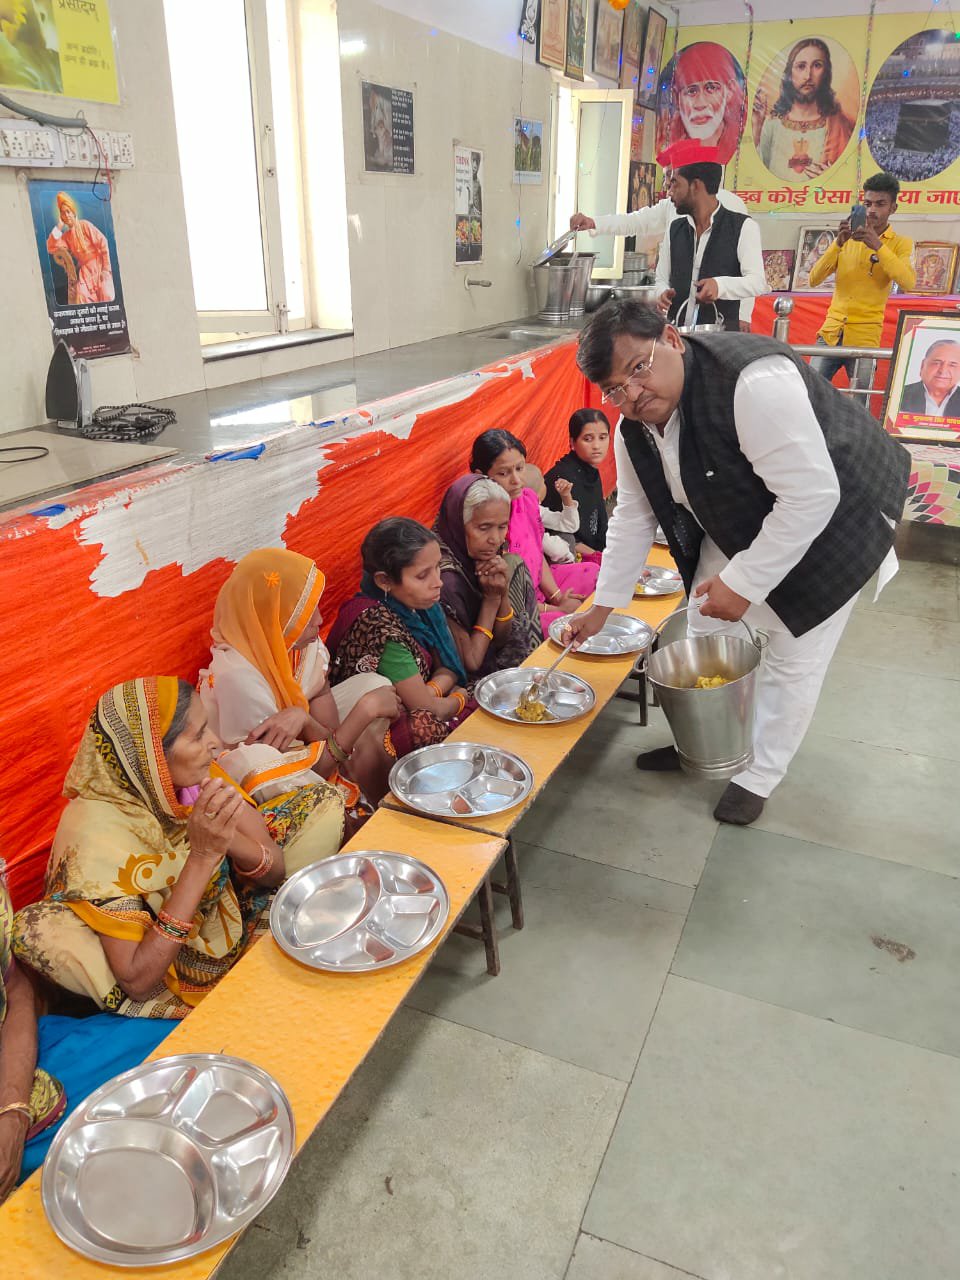 भोजन परोस कर लखनऊ में मनाया गया मुलायम सिंह यादव का जन्मदिन | New India Times